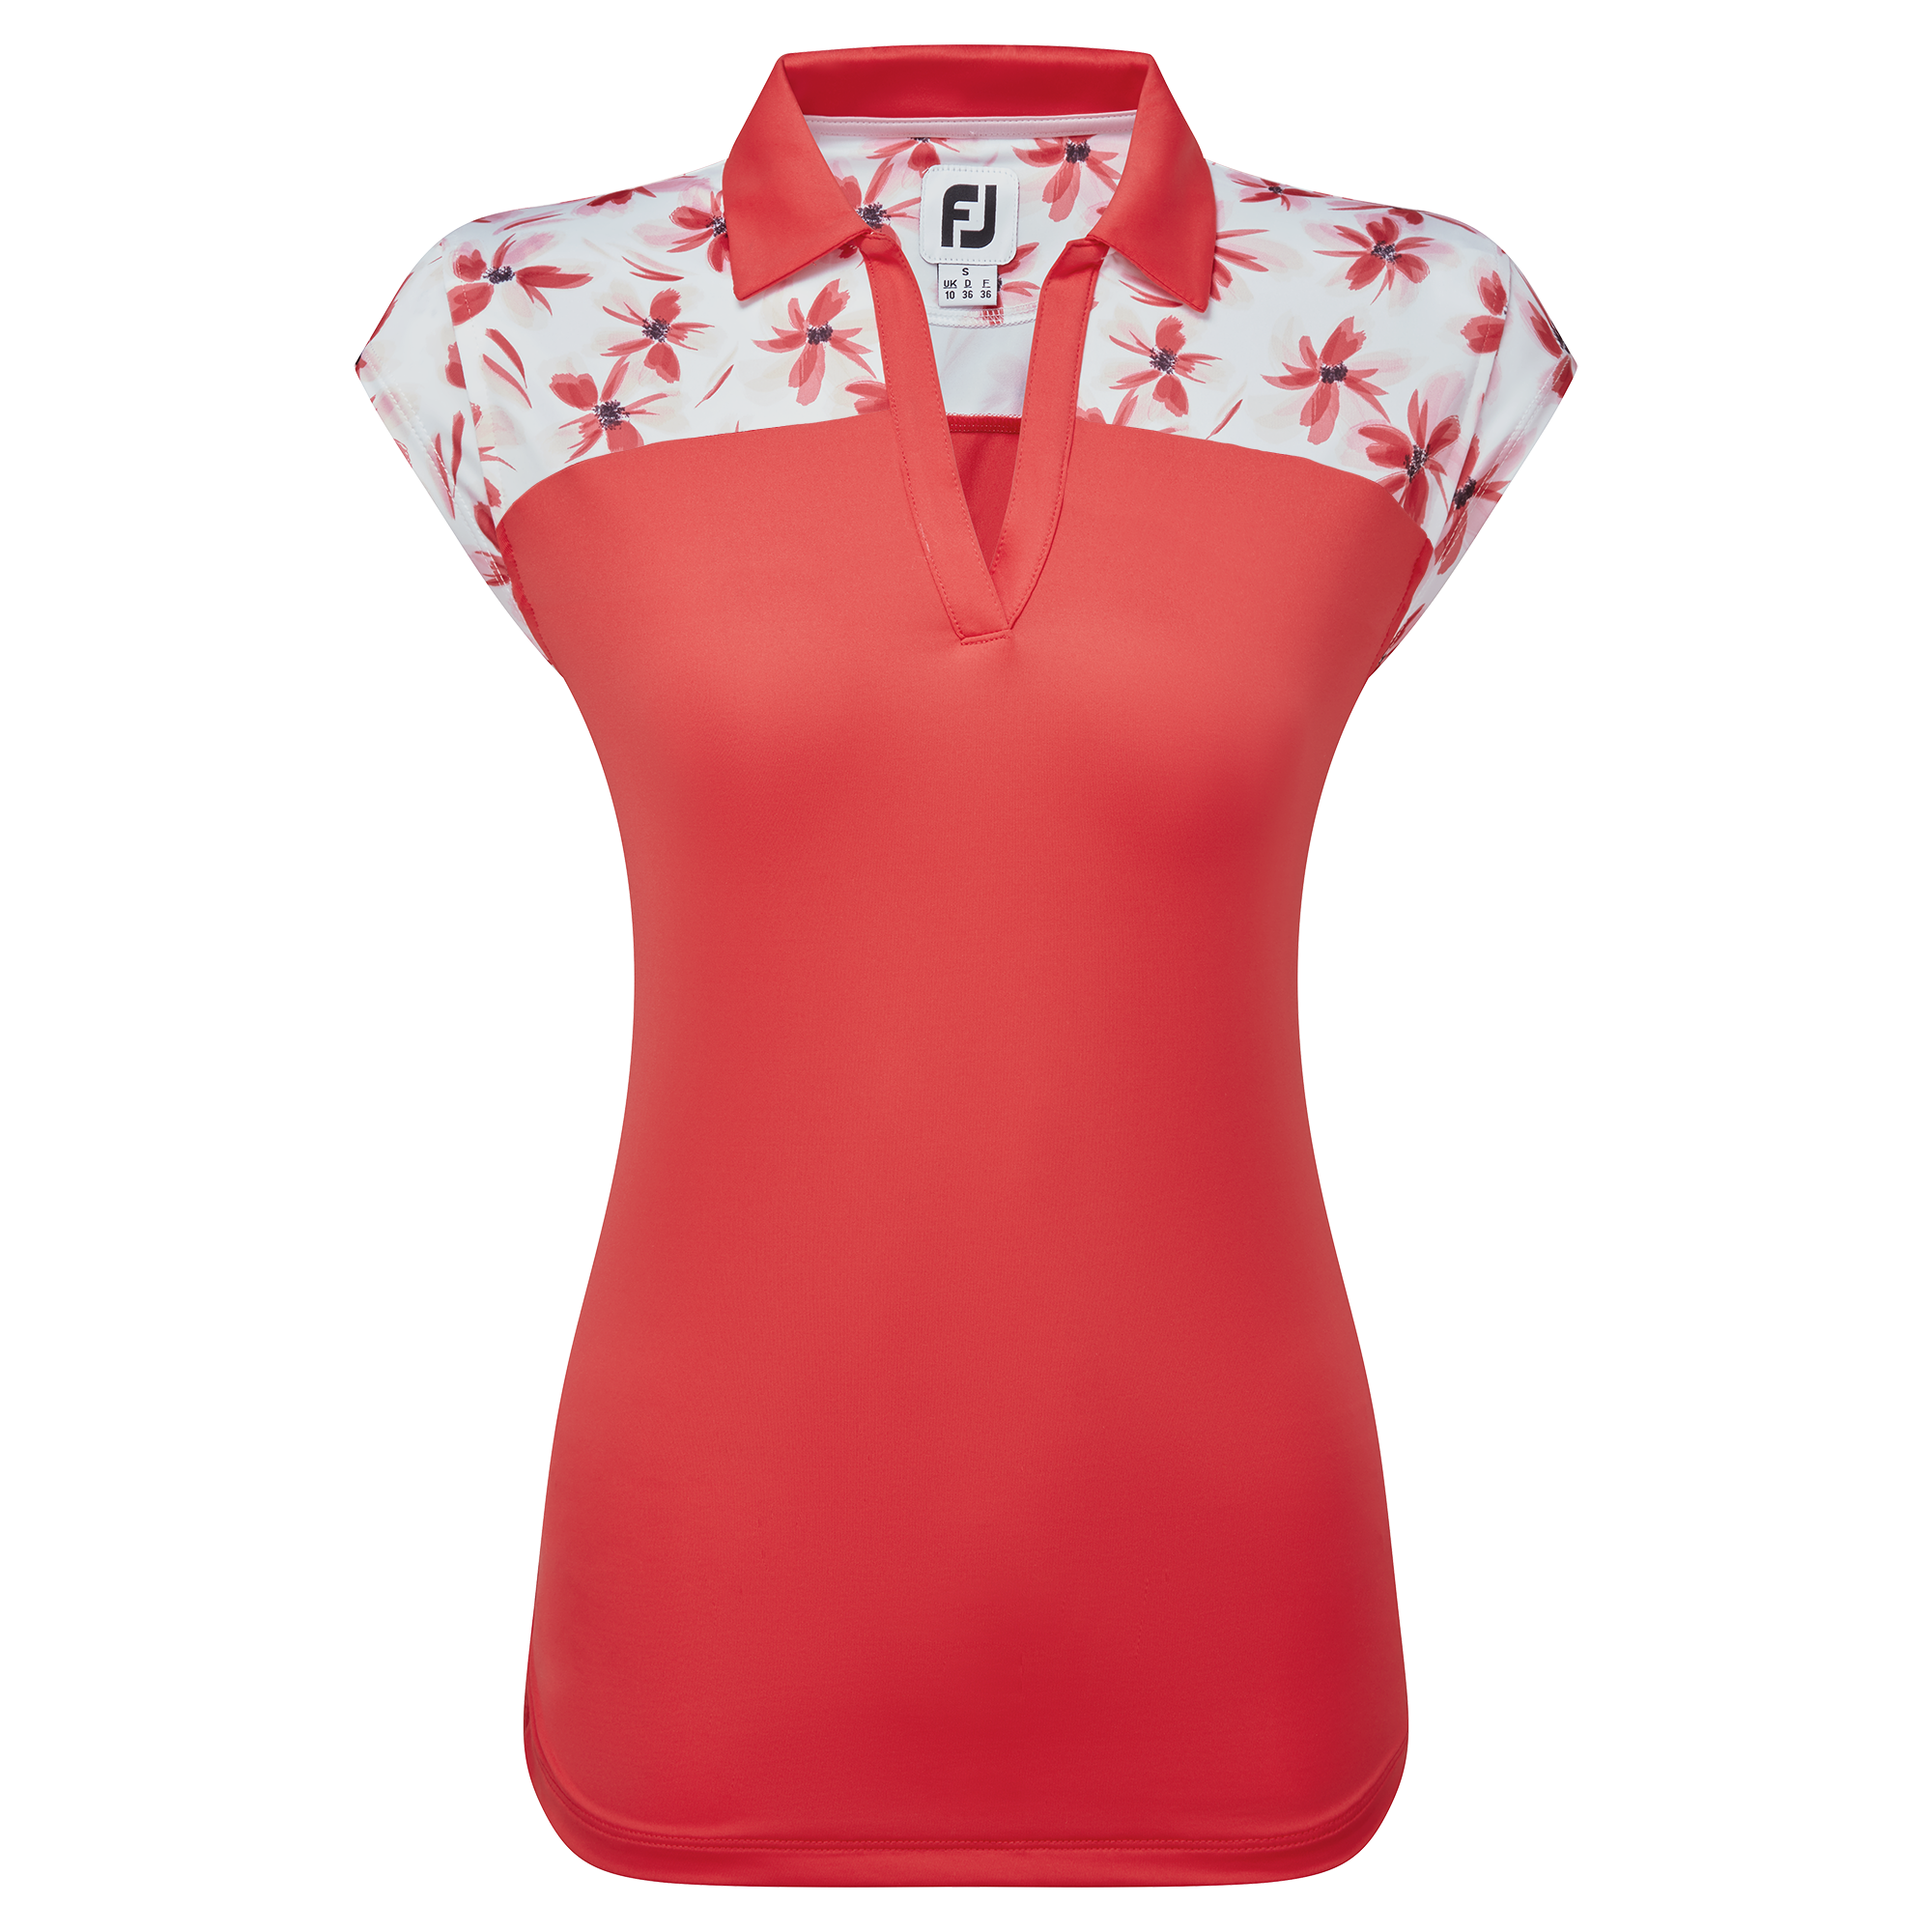 FootJoy Blocked Floral Print Lisle dámské golfové triko, červené